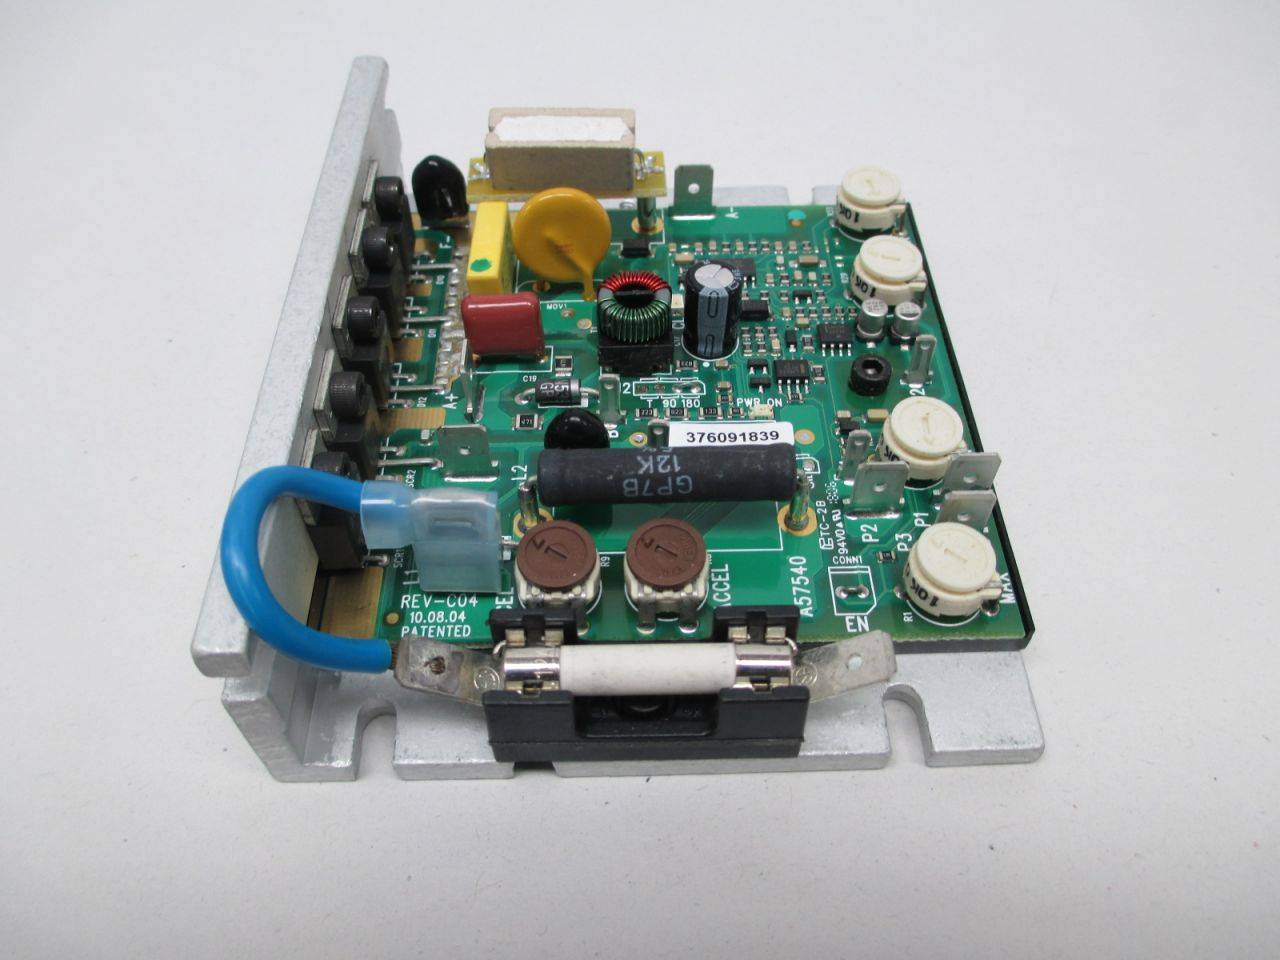 KB Electronics DC Motor Control Kbmm-225 3563b 30000115 for sale online